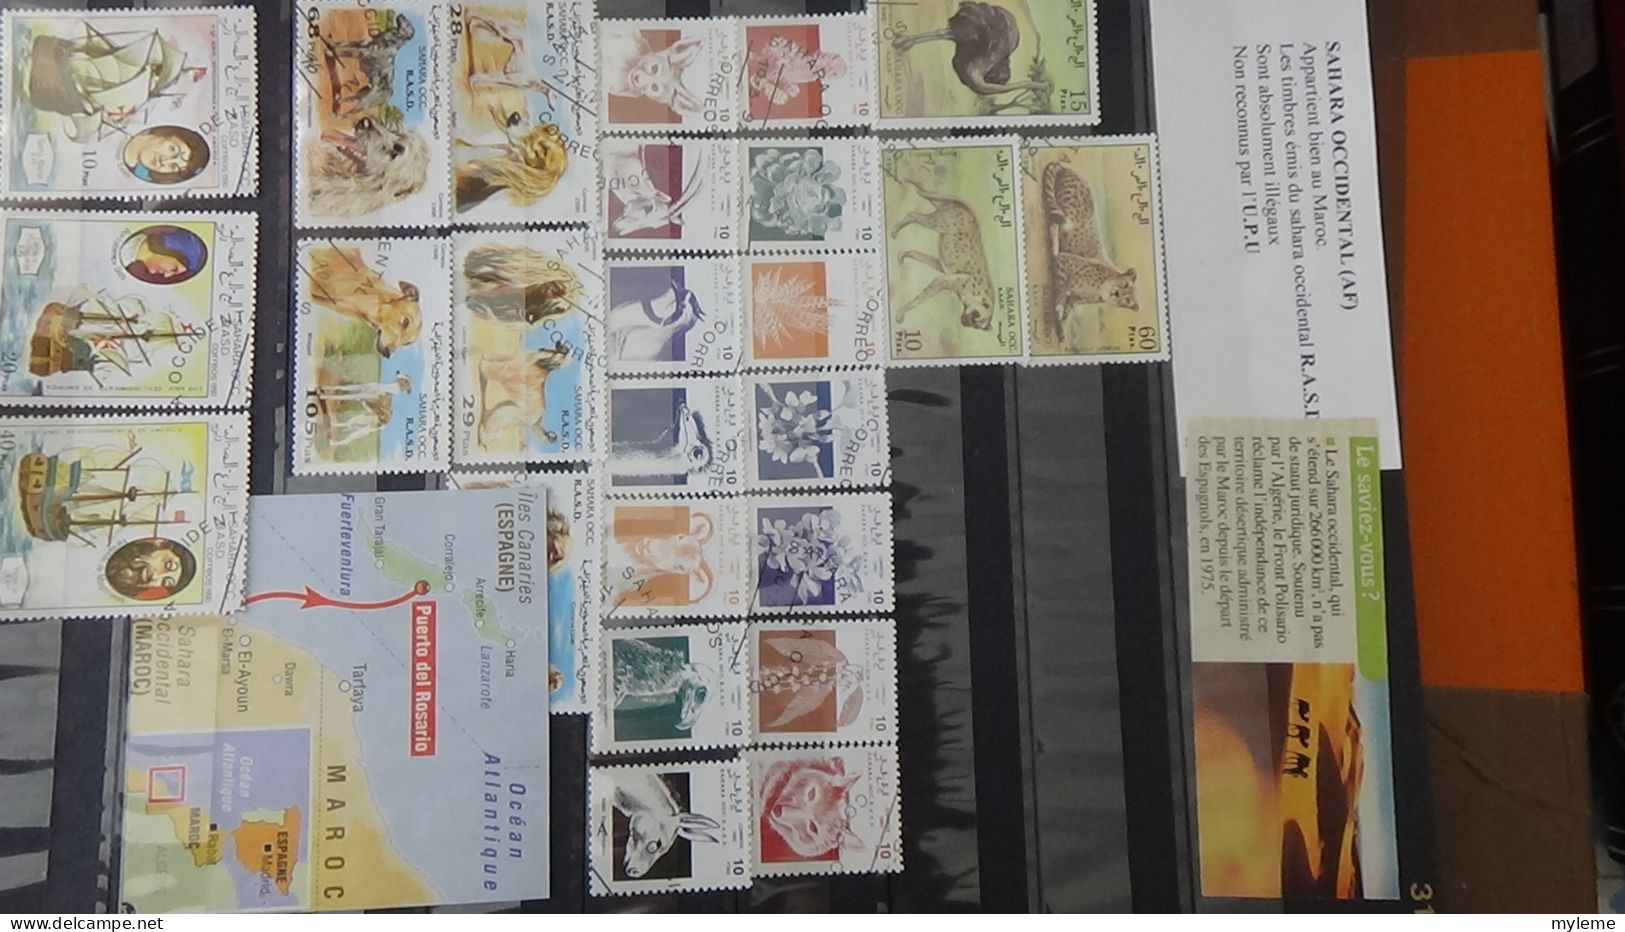 BF27 Ensemble de timbres de divers pays + Mouchons N° 124 + 125 + 126 **. Cote 705 euros